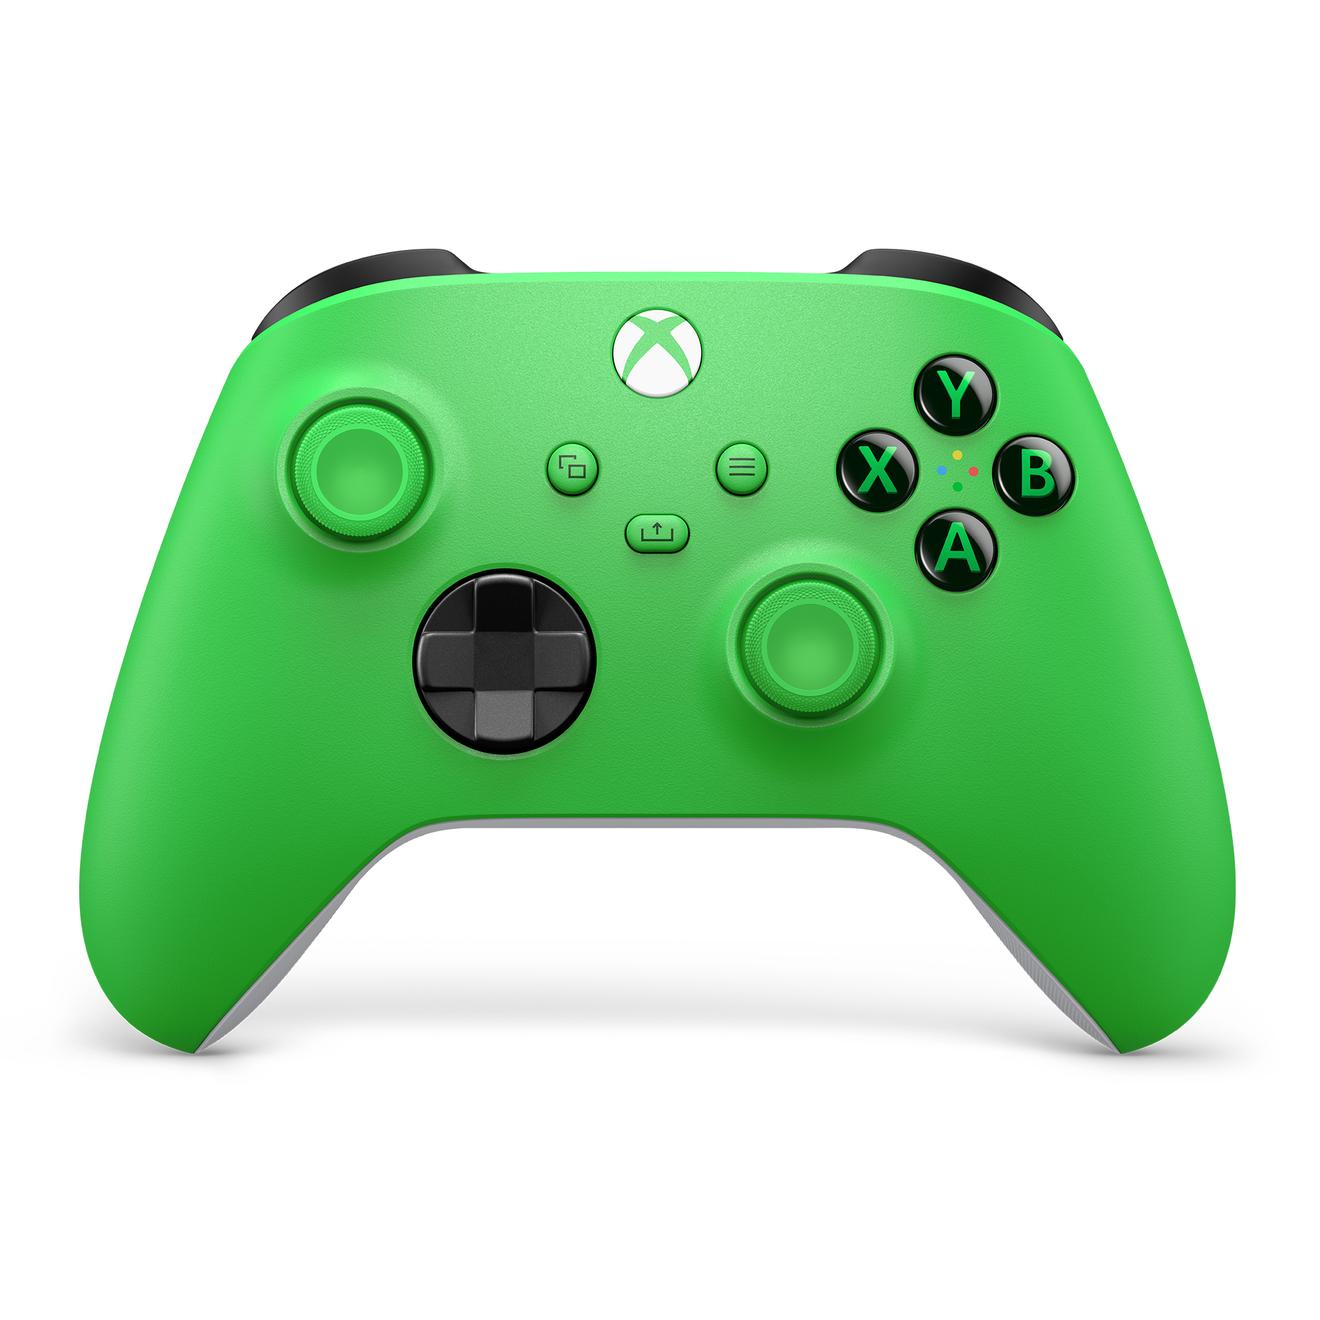 Offerta per Microsoft - Controller Wireless per Xbox - Velocity Green a 49,99€ in Comet